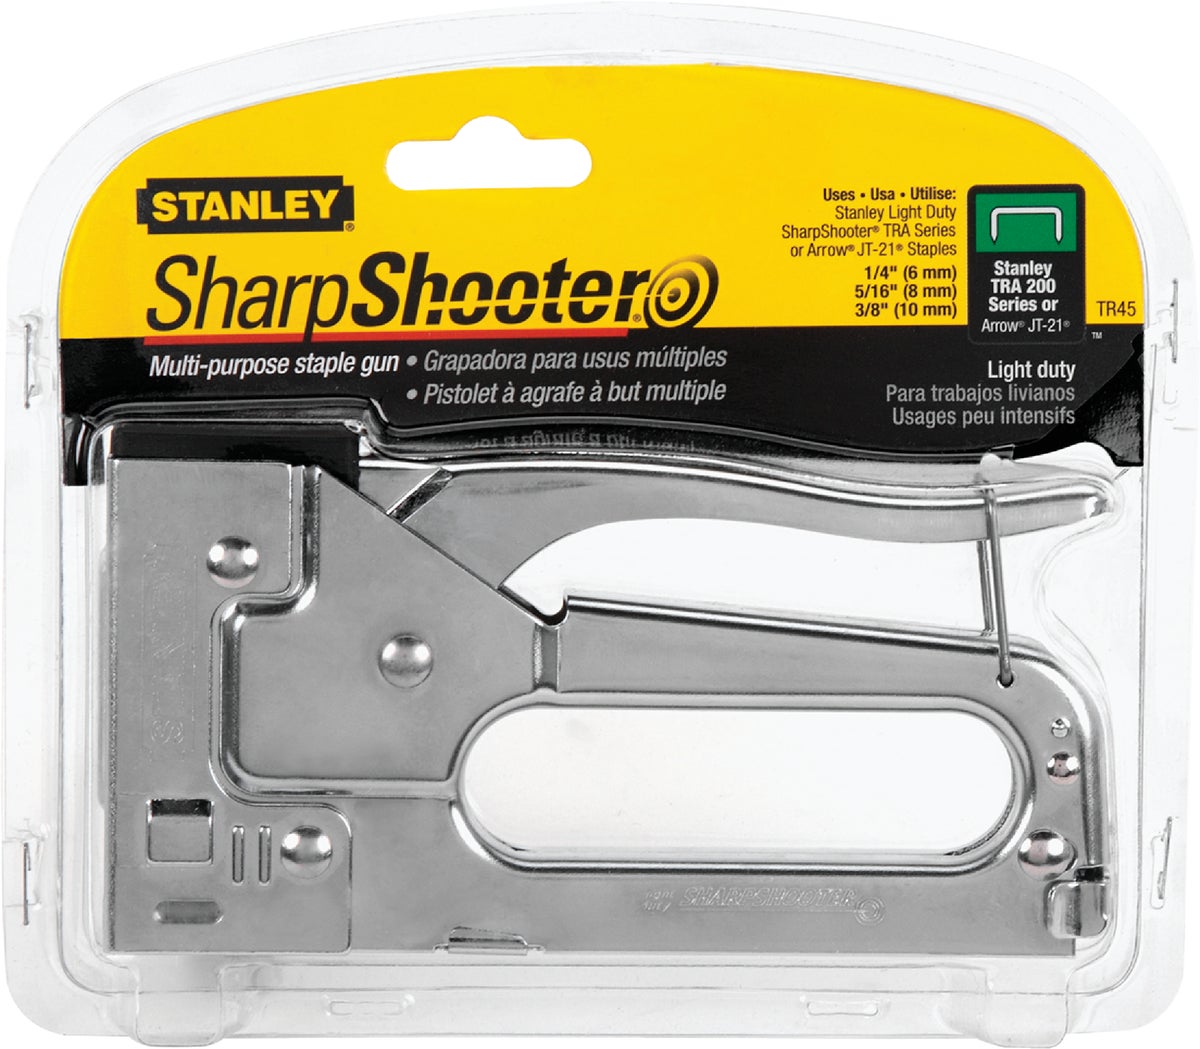 loading stanley sharpshooter staple gun